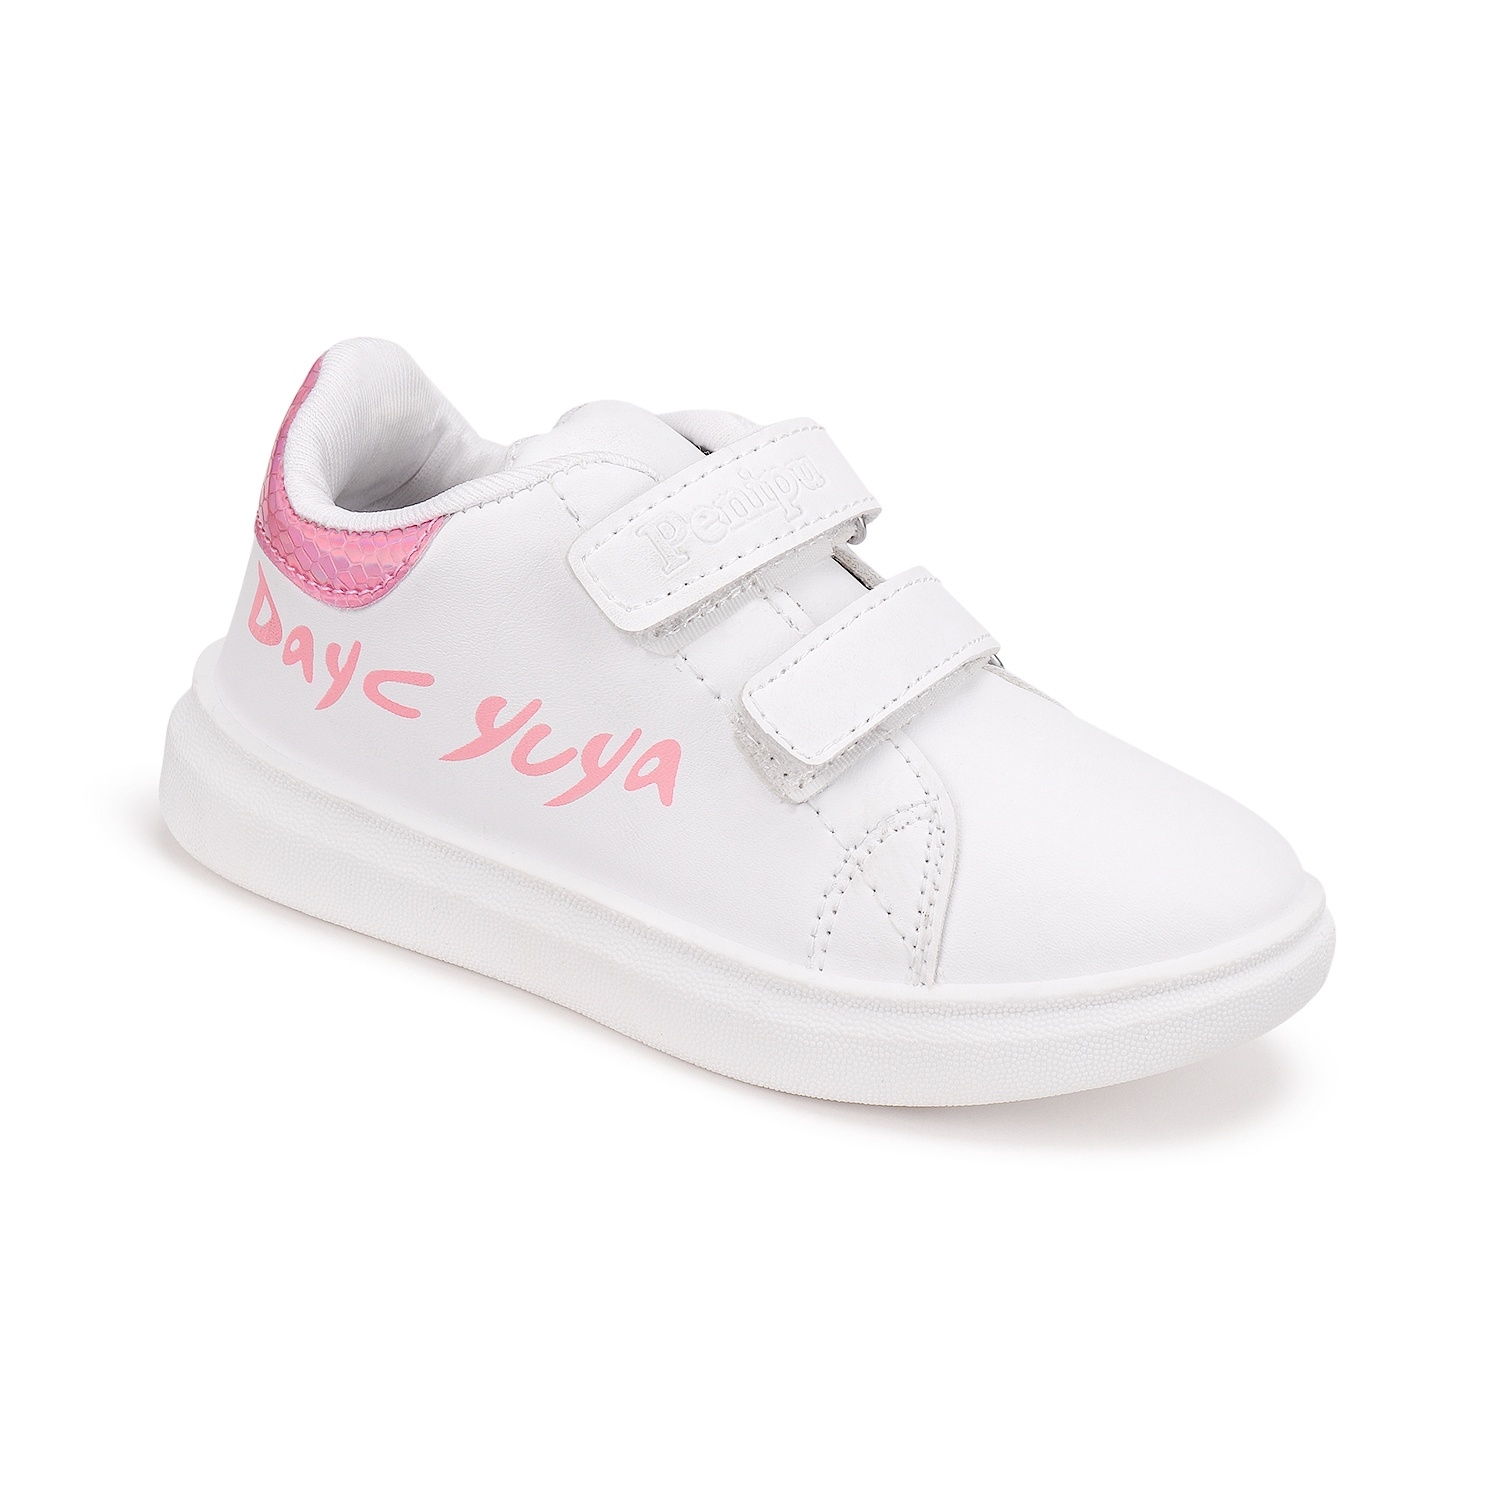 Camro Zara 1 White/Fusia Boys Sneakers